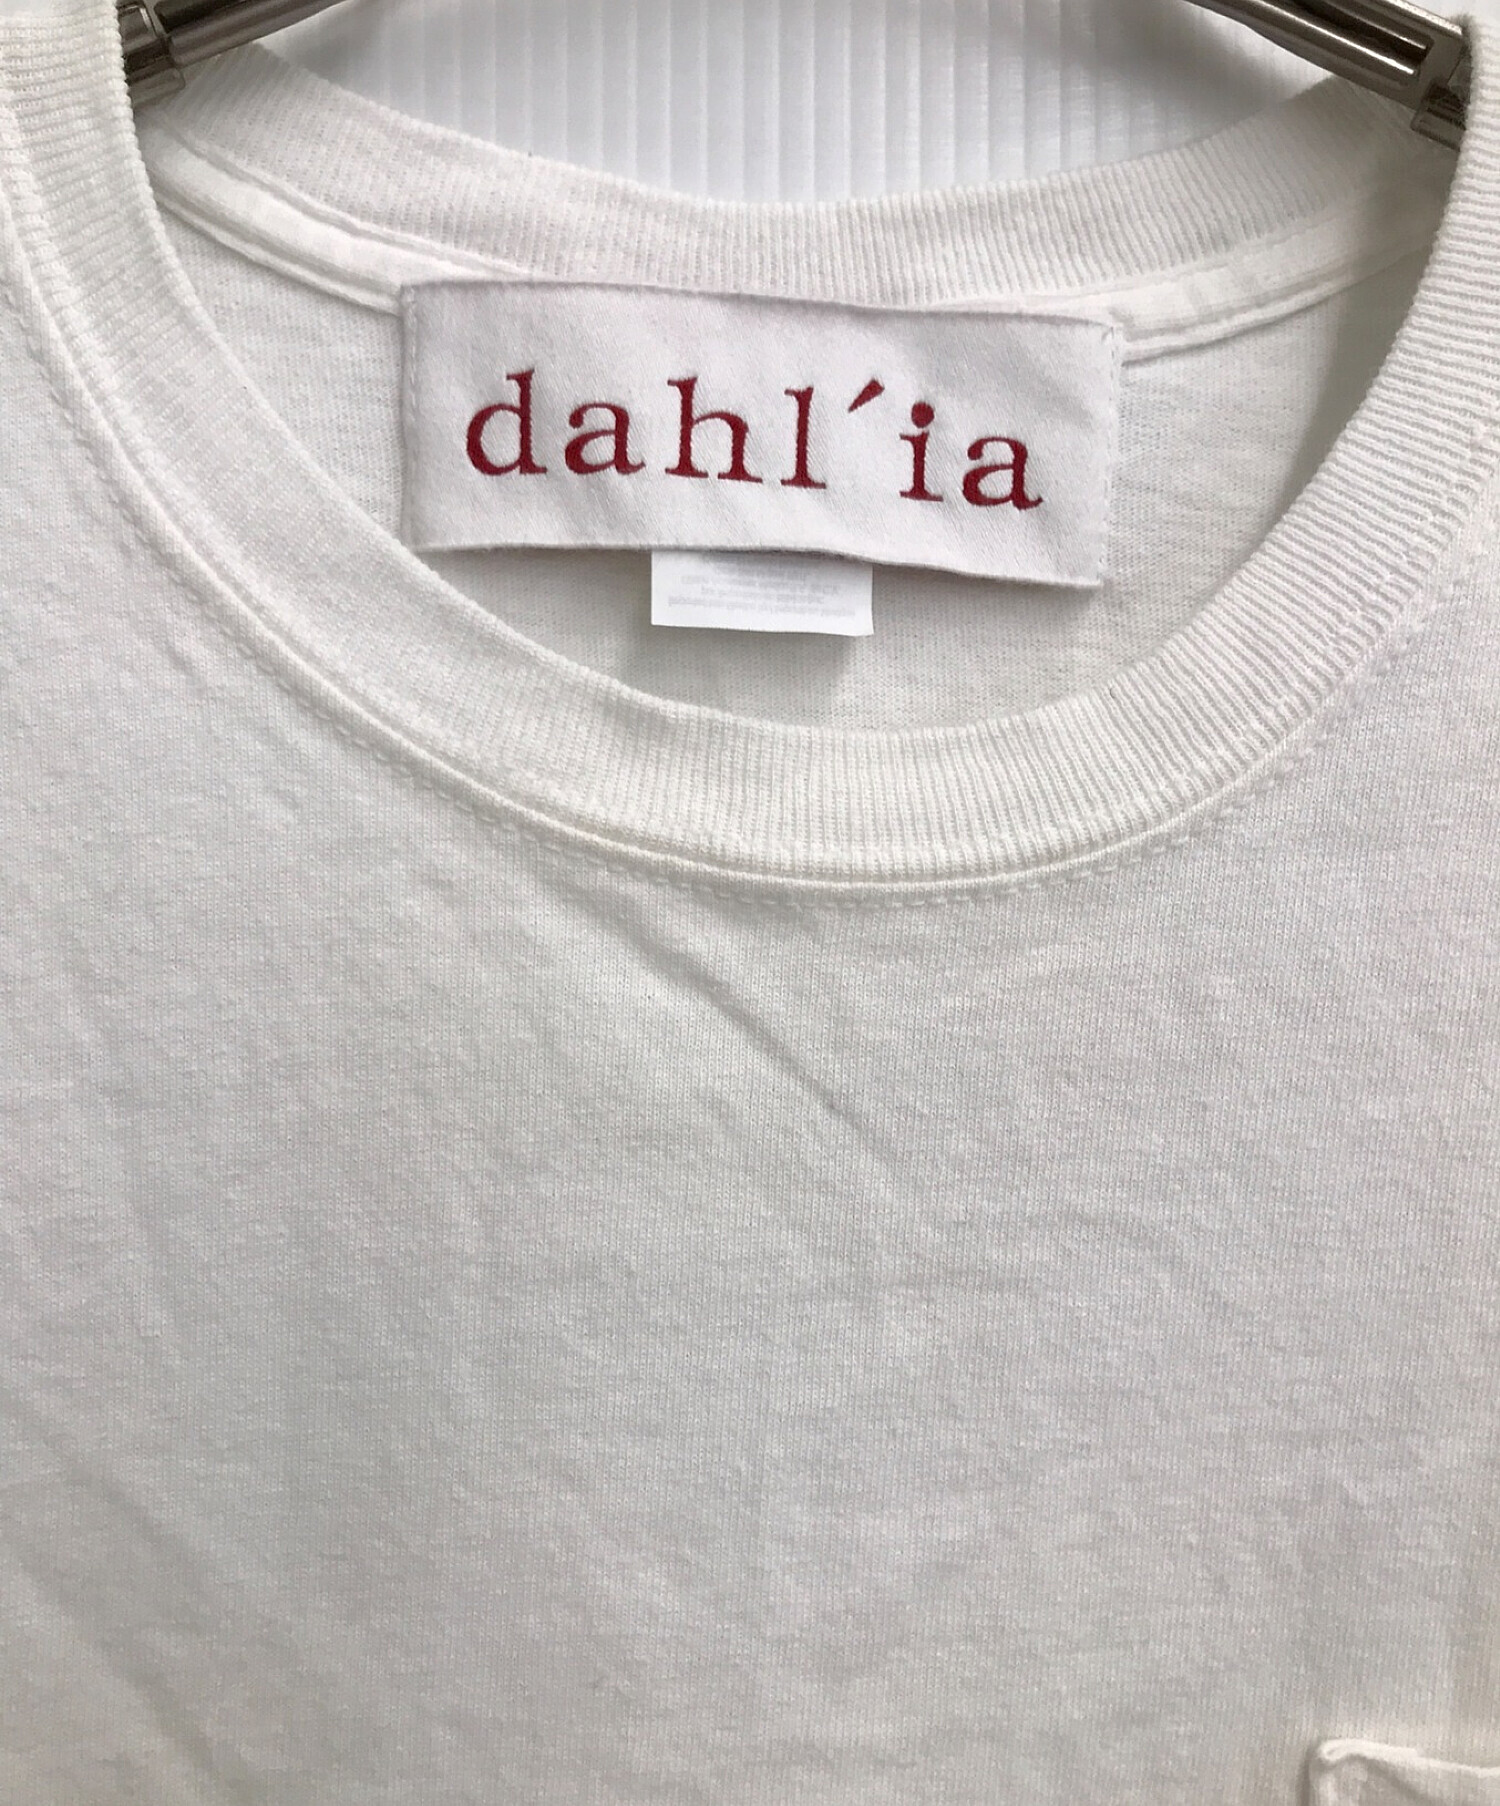 dahl'ia (ダリア) リメイクティアードTシャツ ホワイト サイズ:ー